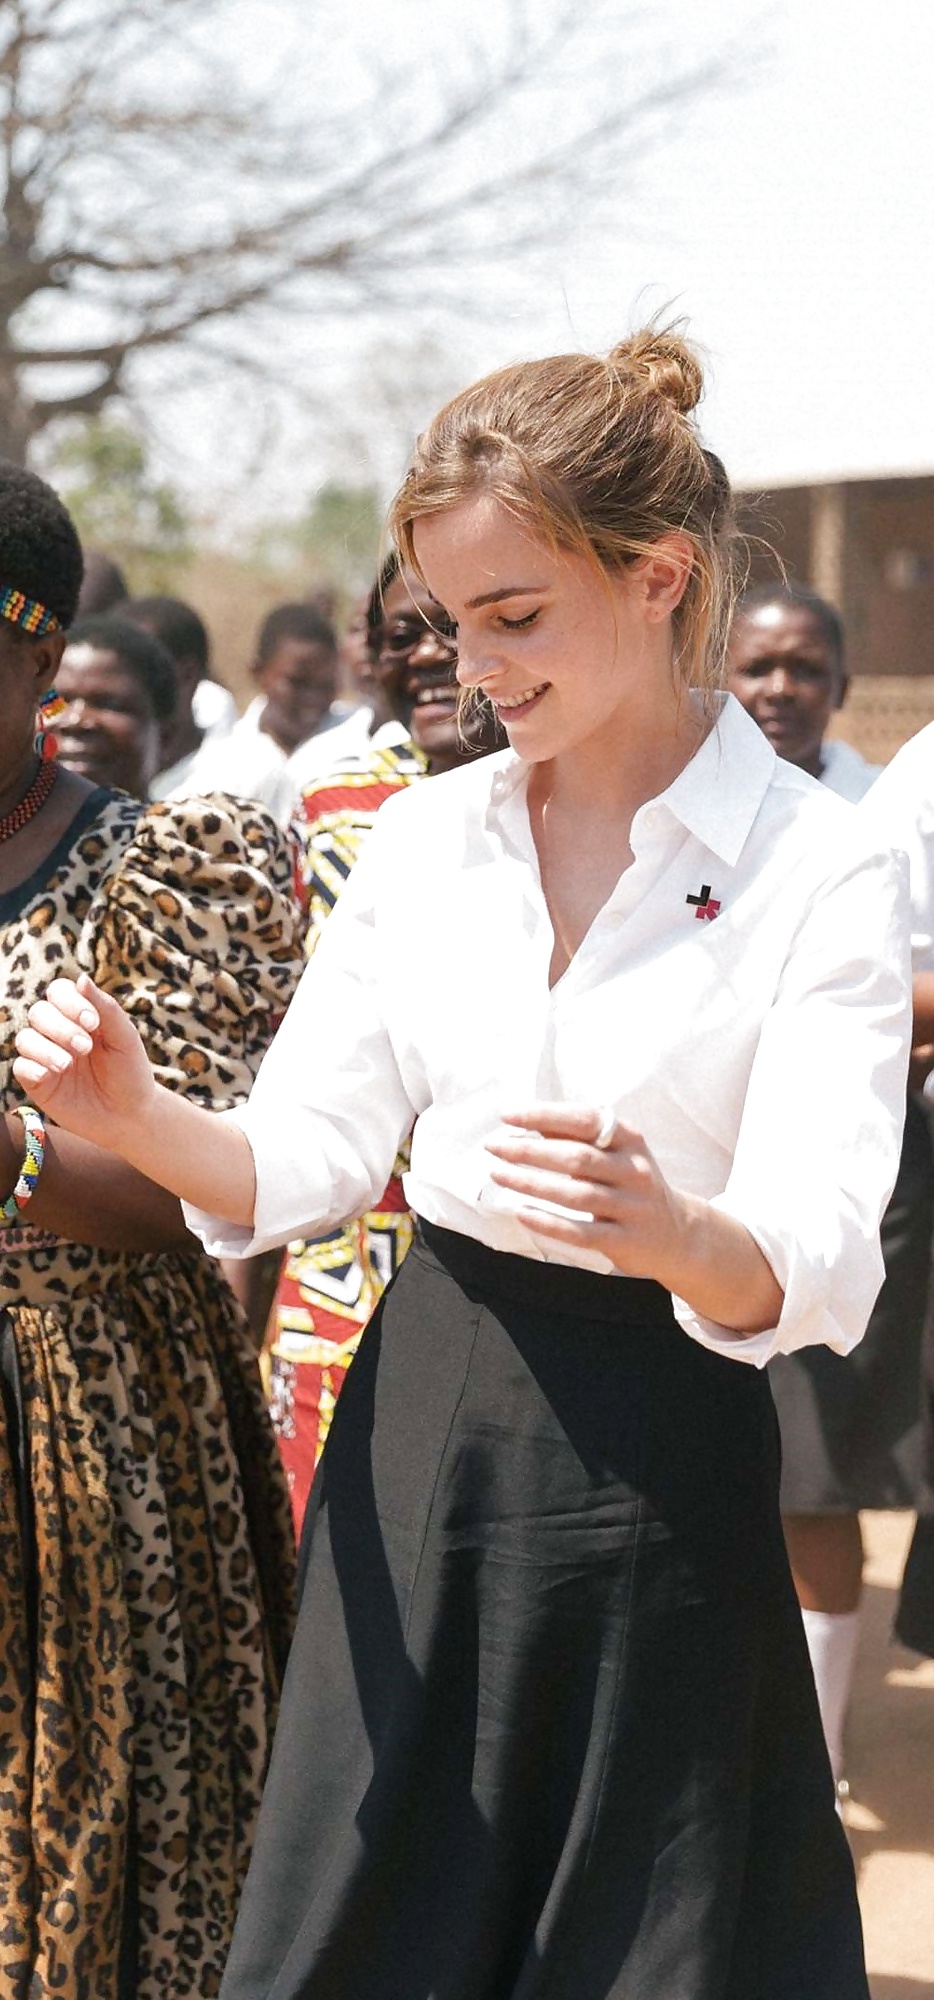 Emma Watson - My pretty but stupid feminist UN libtard (13/20)